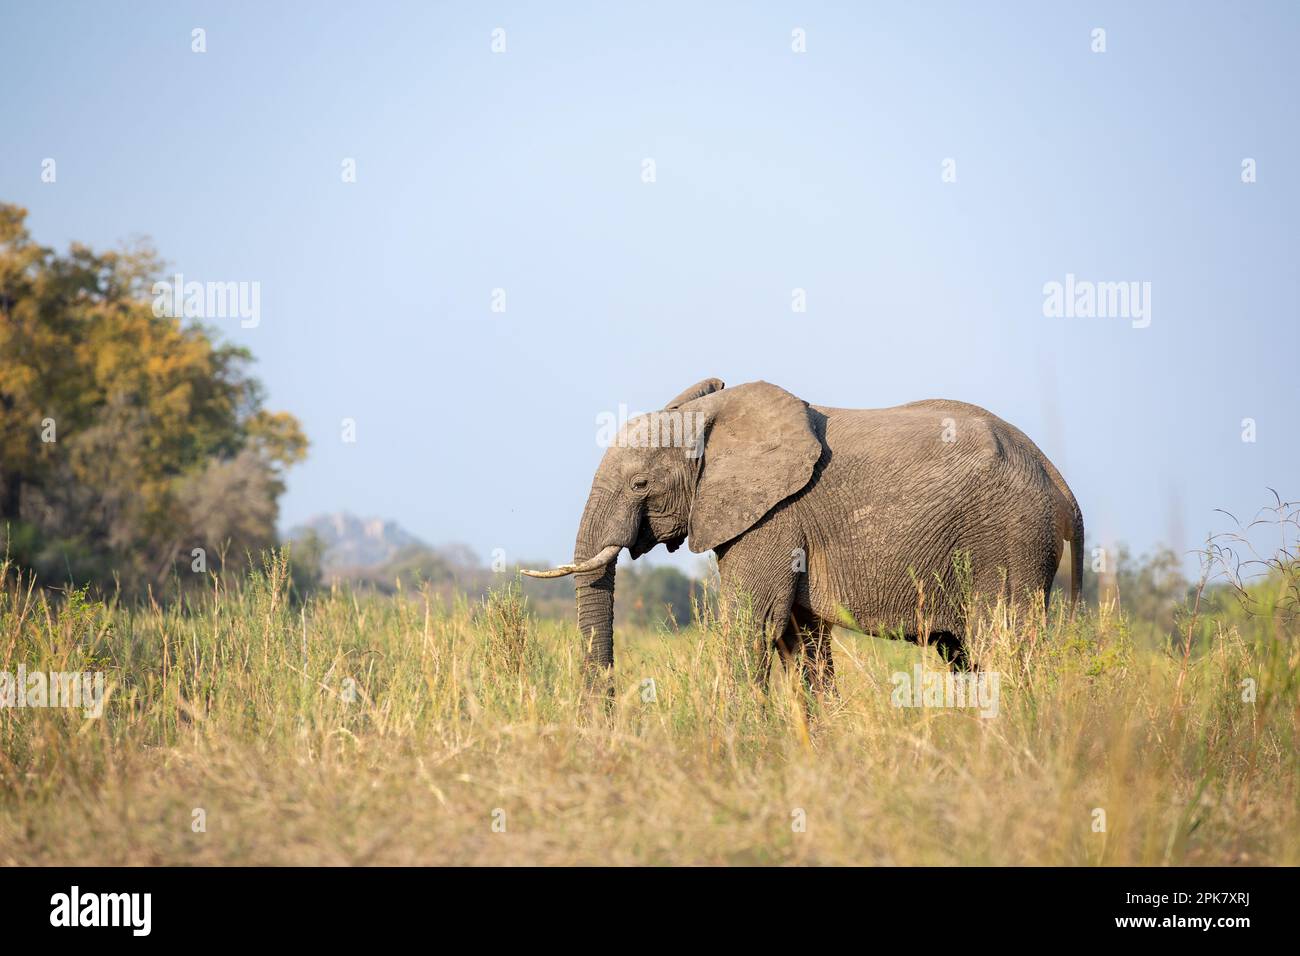 Un éléphant, Loxodonta africana, marchant dans de longues herbes, en noir et blanc. Banque D'Images